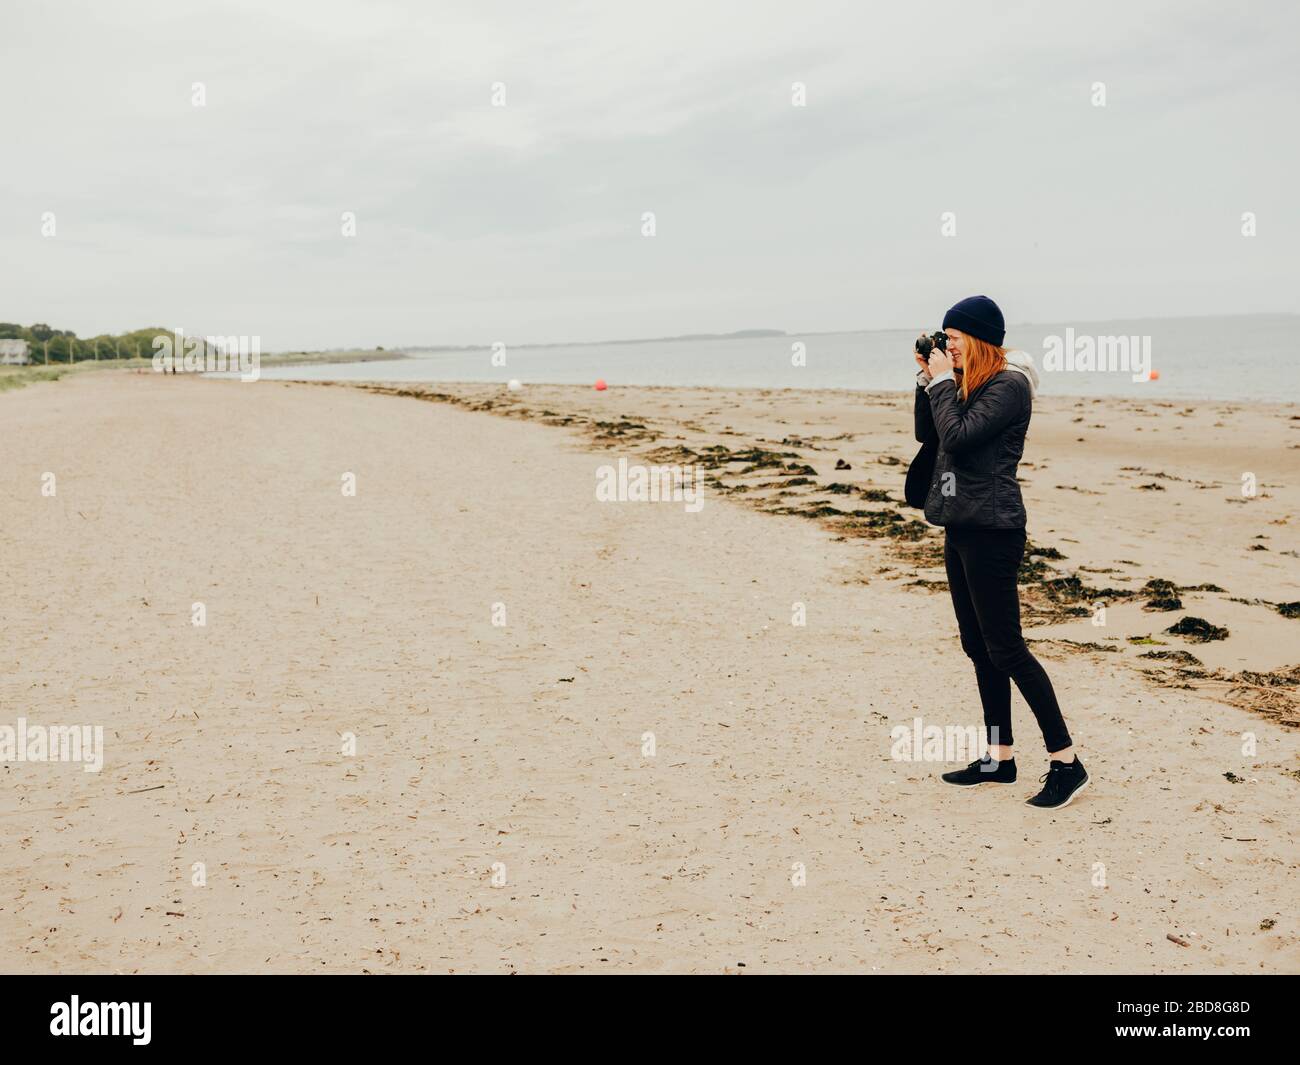 Woman taking photos on beach in Scotland Stock Photo